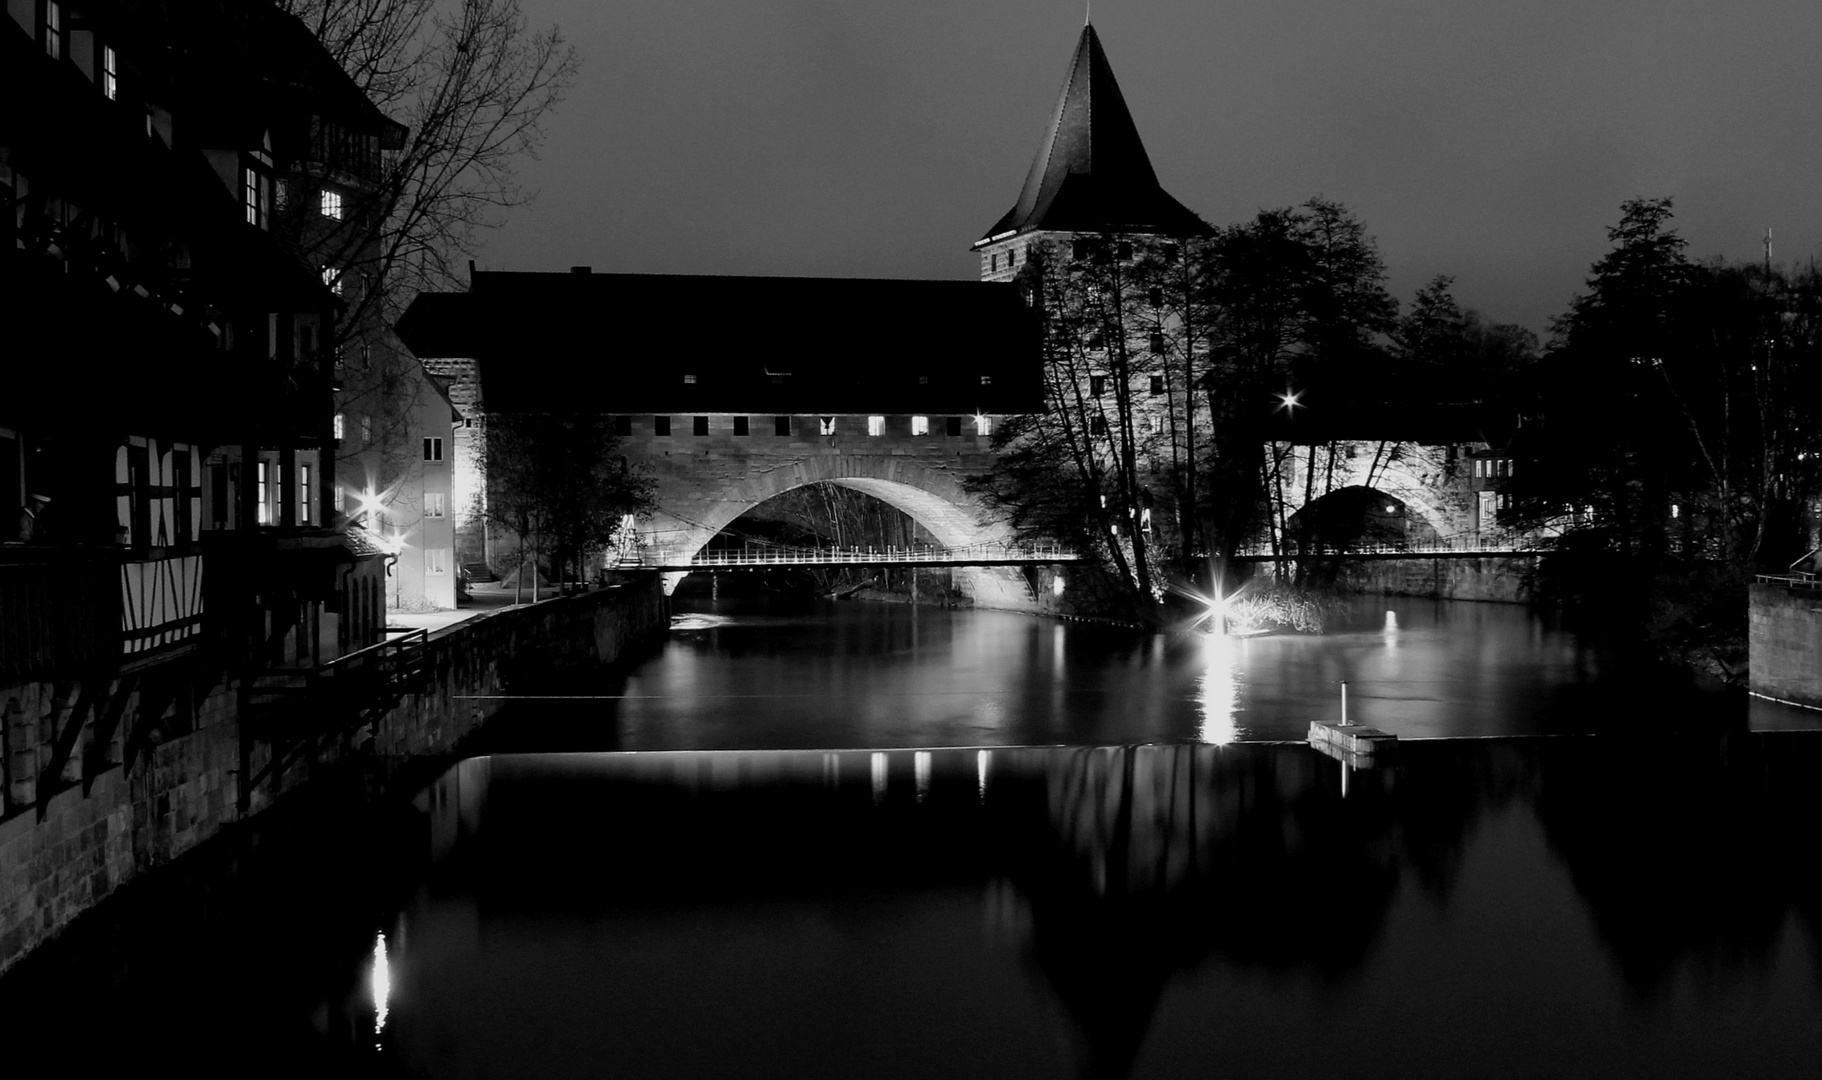 Nürnberg bei Nacht.